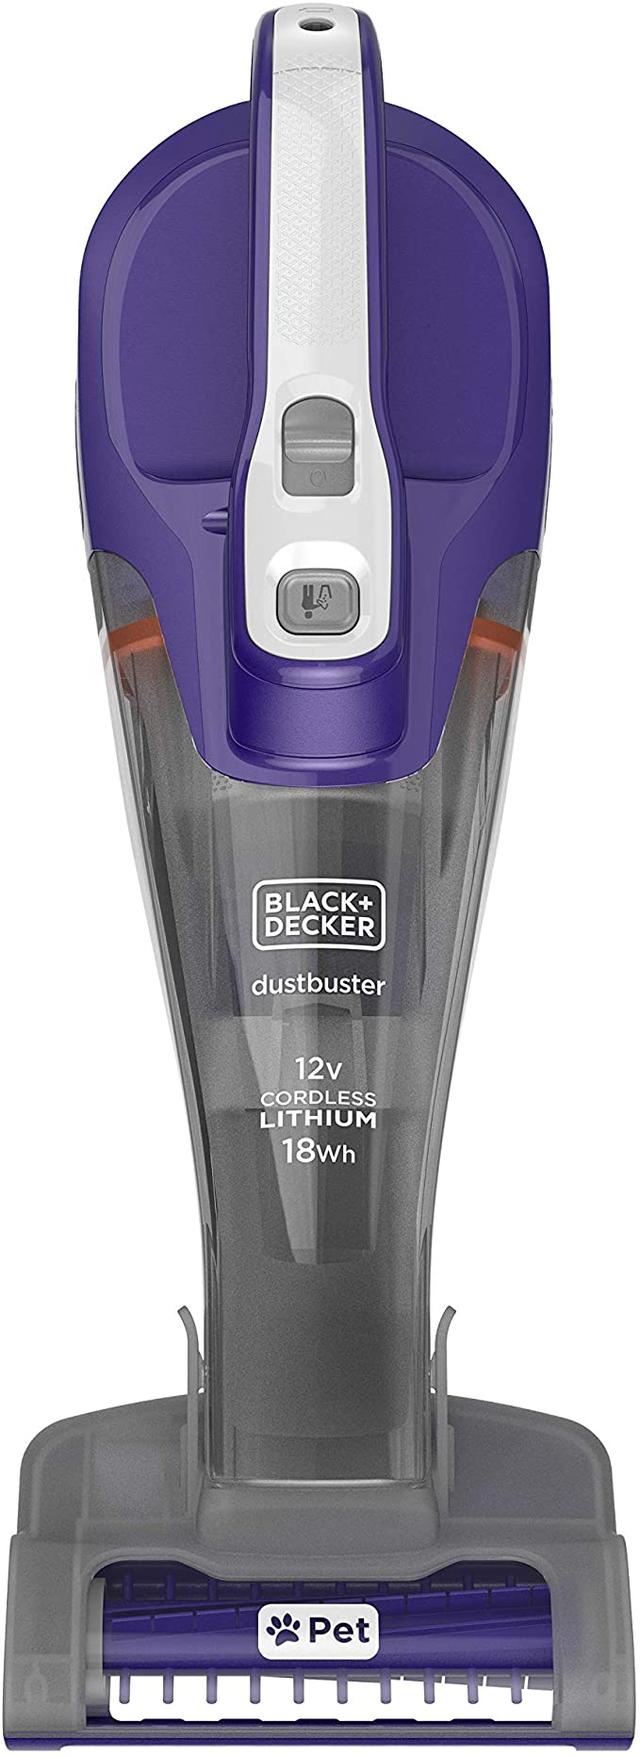 مكنسة كهربائية لاسلكية 12 فولت Black+Decker Cordless Dustbuster Handheld Pet Care Vacuum - SW1hZ2U6MTY2NzQw